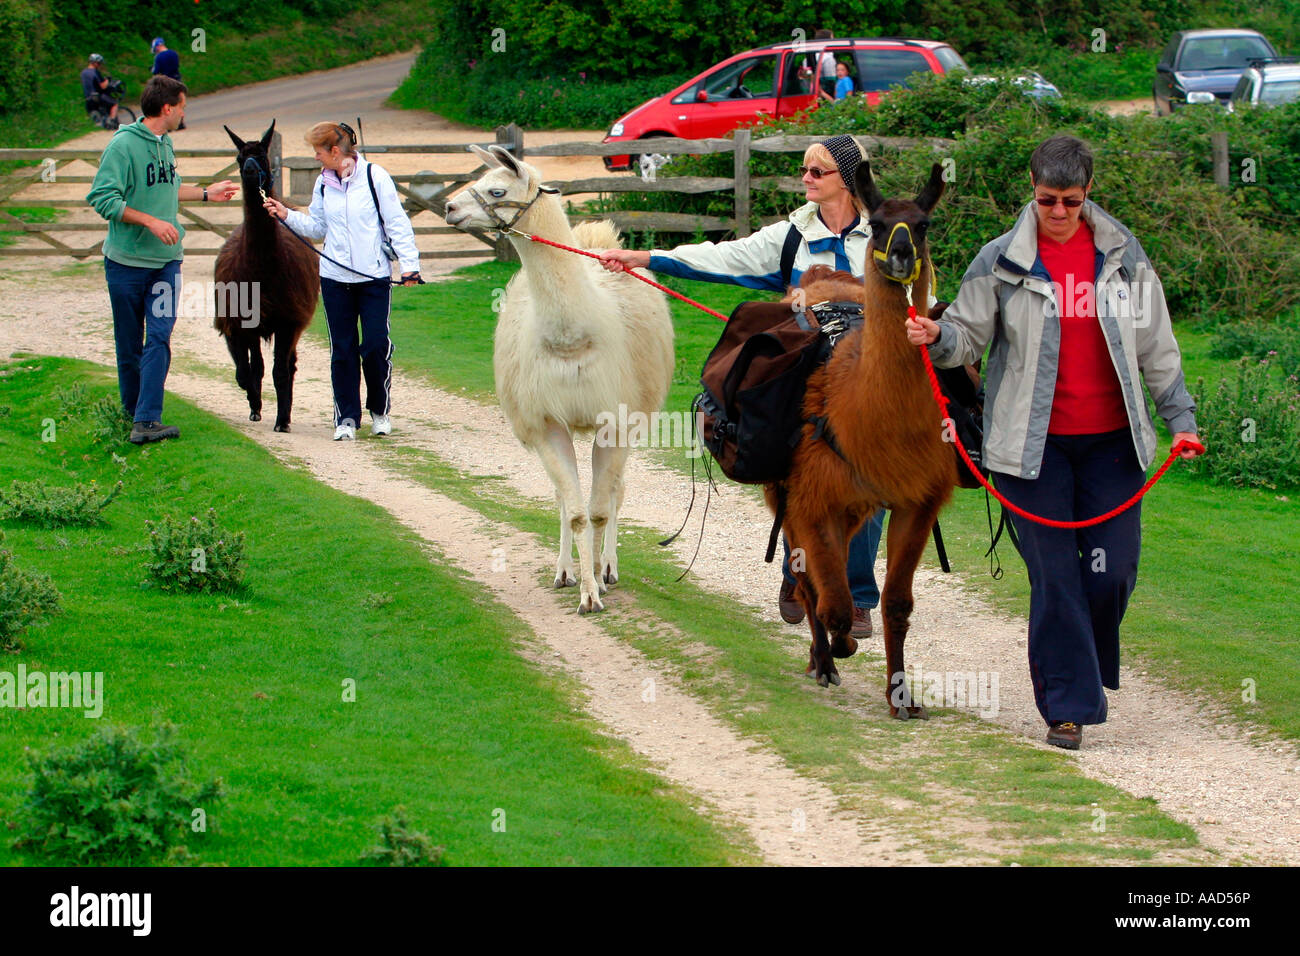 Llama Trekking Brightstone down Isle of Wight England UK Great Britain Stock Photo